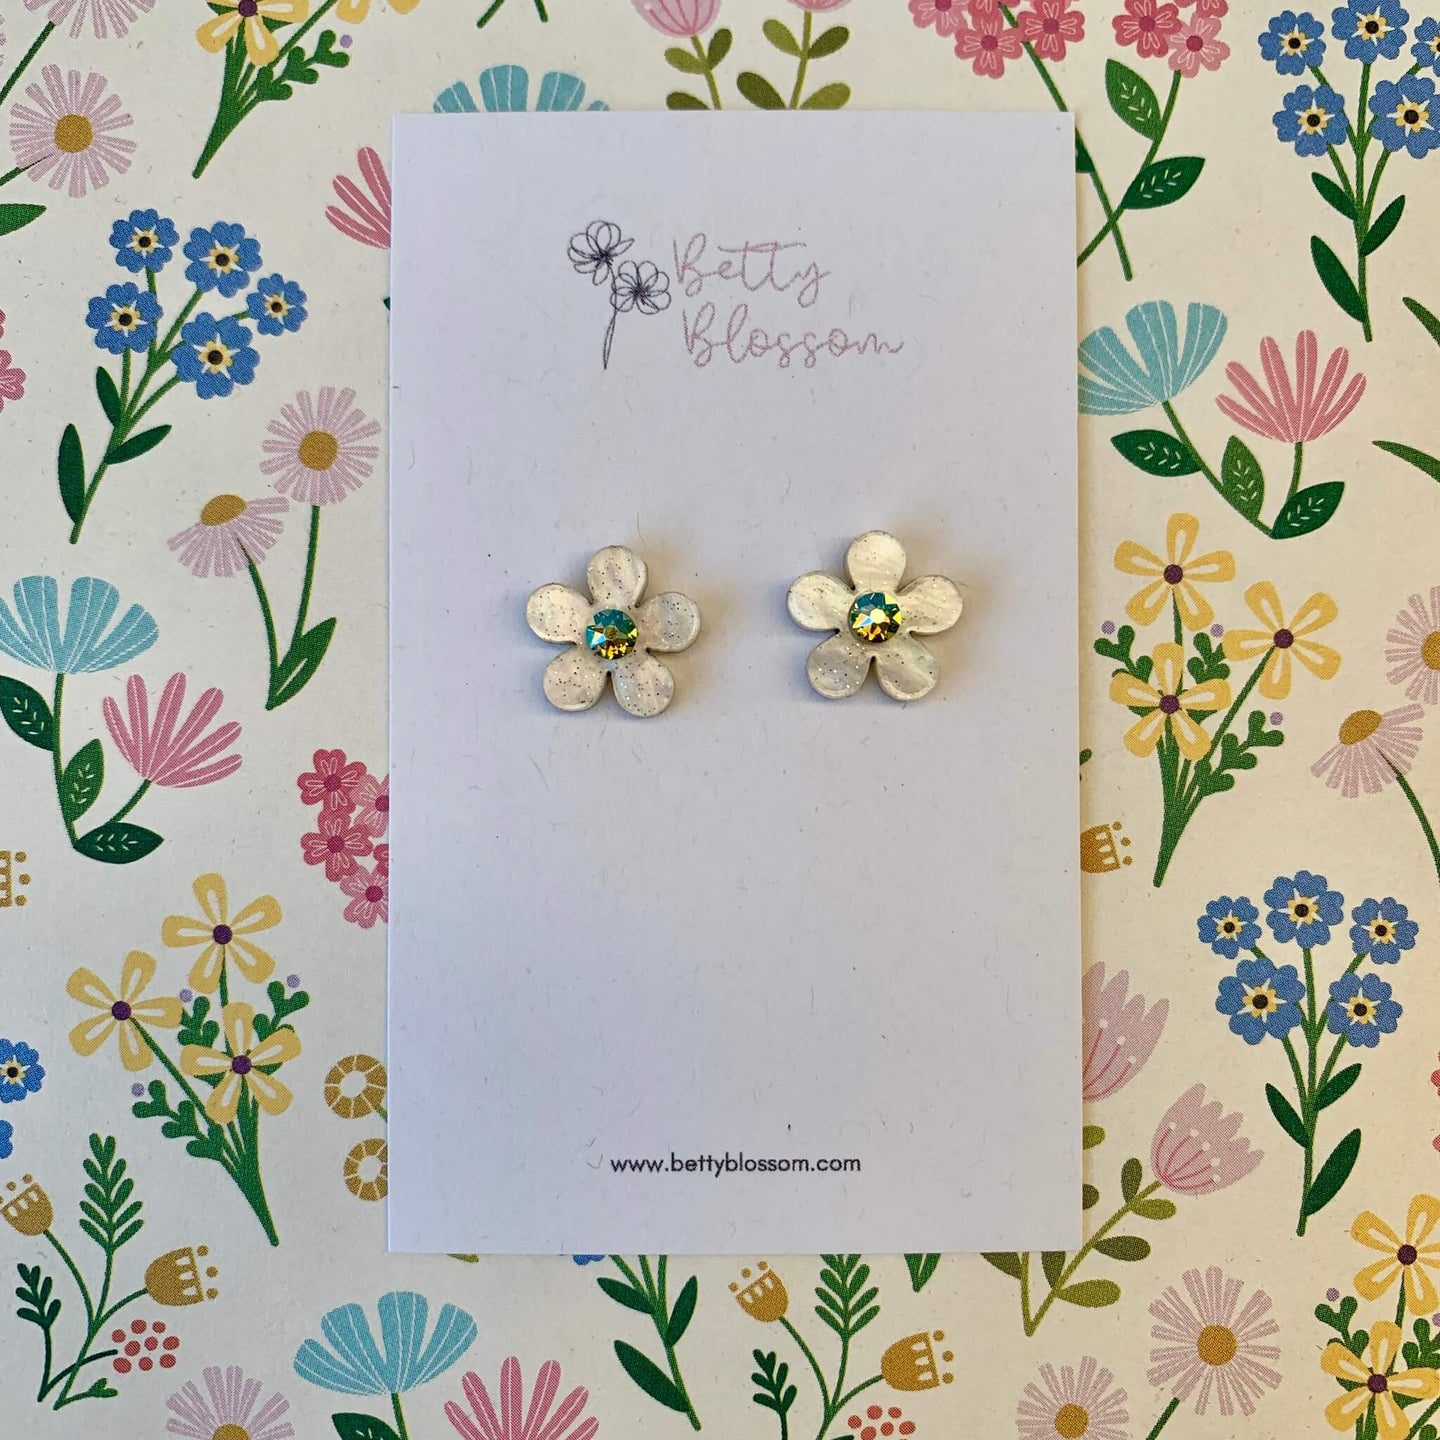 Betty Blossom Ivory & Peridot Flower Stud Earrings